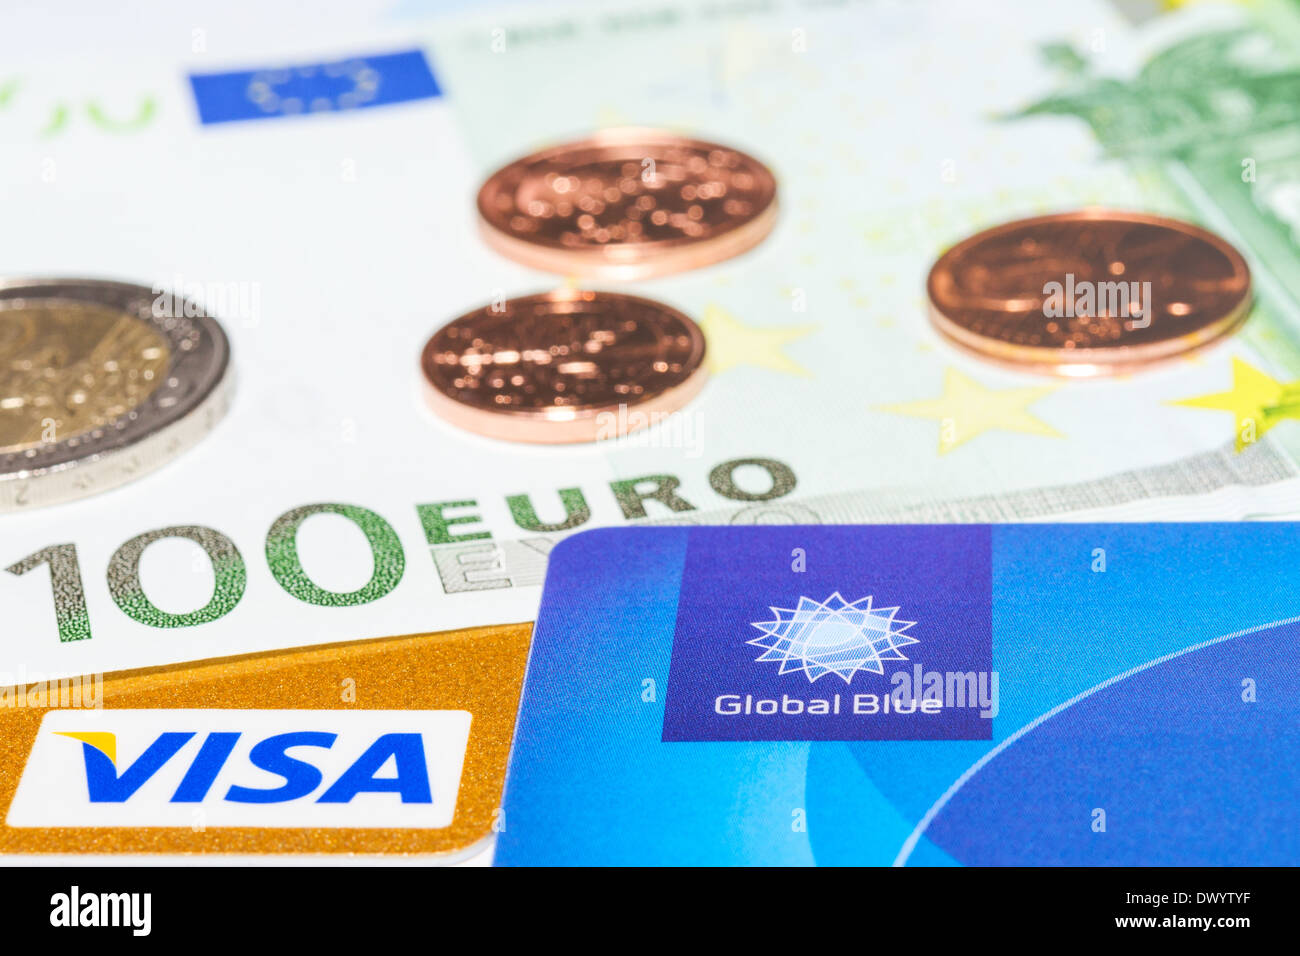 München, Deutschland - 23. Februar 2014: "Global Blue", "Visa" Kreditkarte und Bargeld - Ihren Weg für Steuer frei einkaufen. Stockfoto